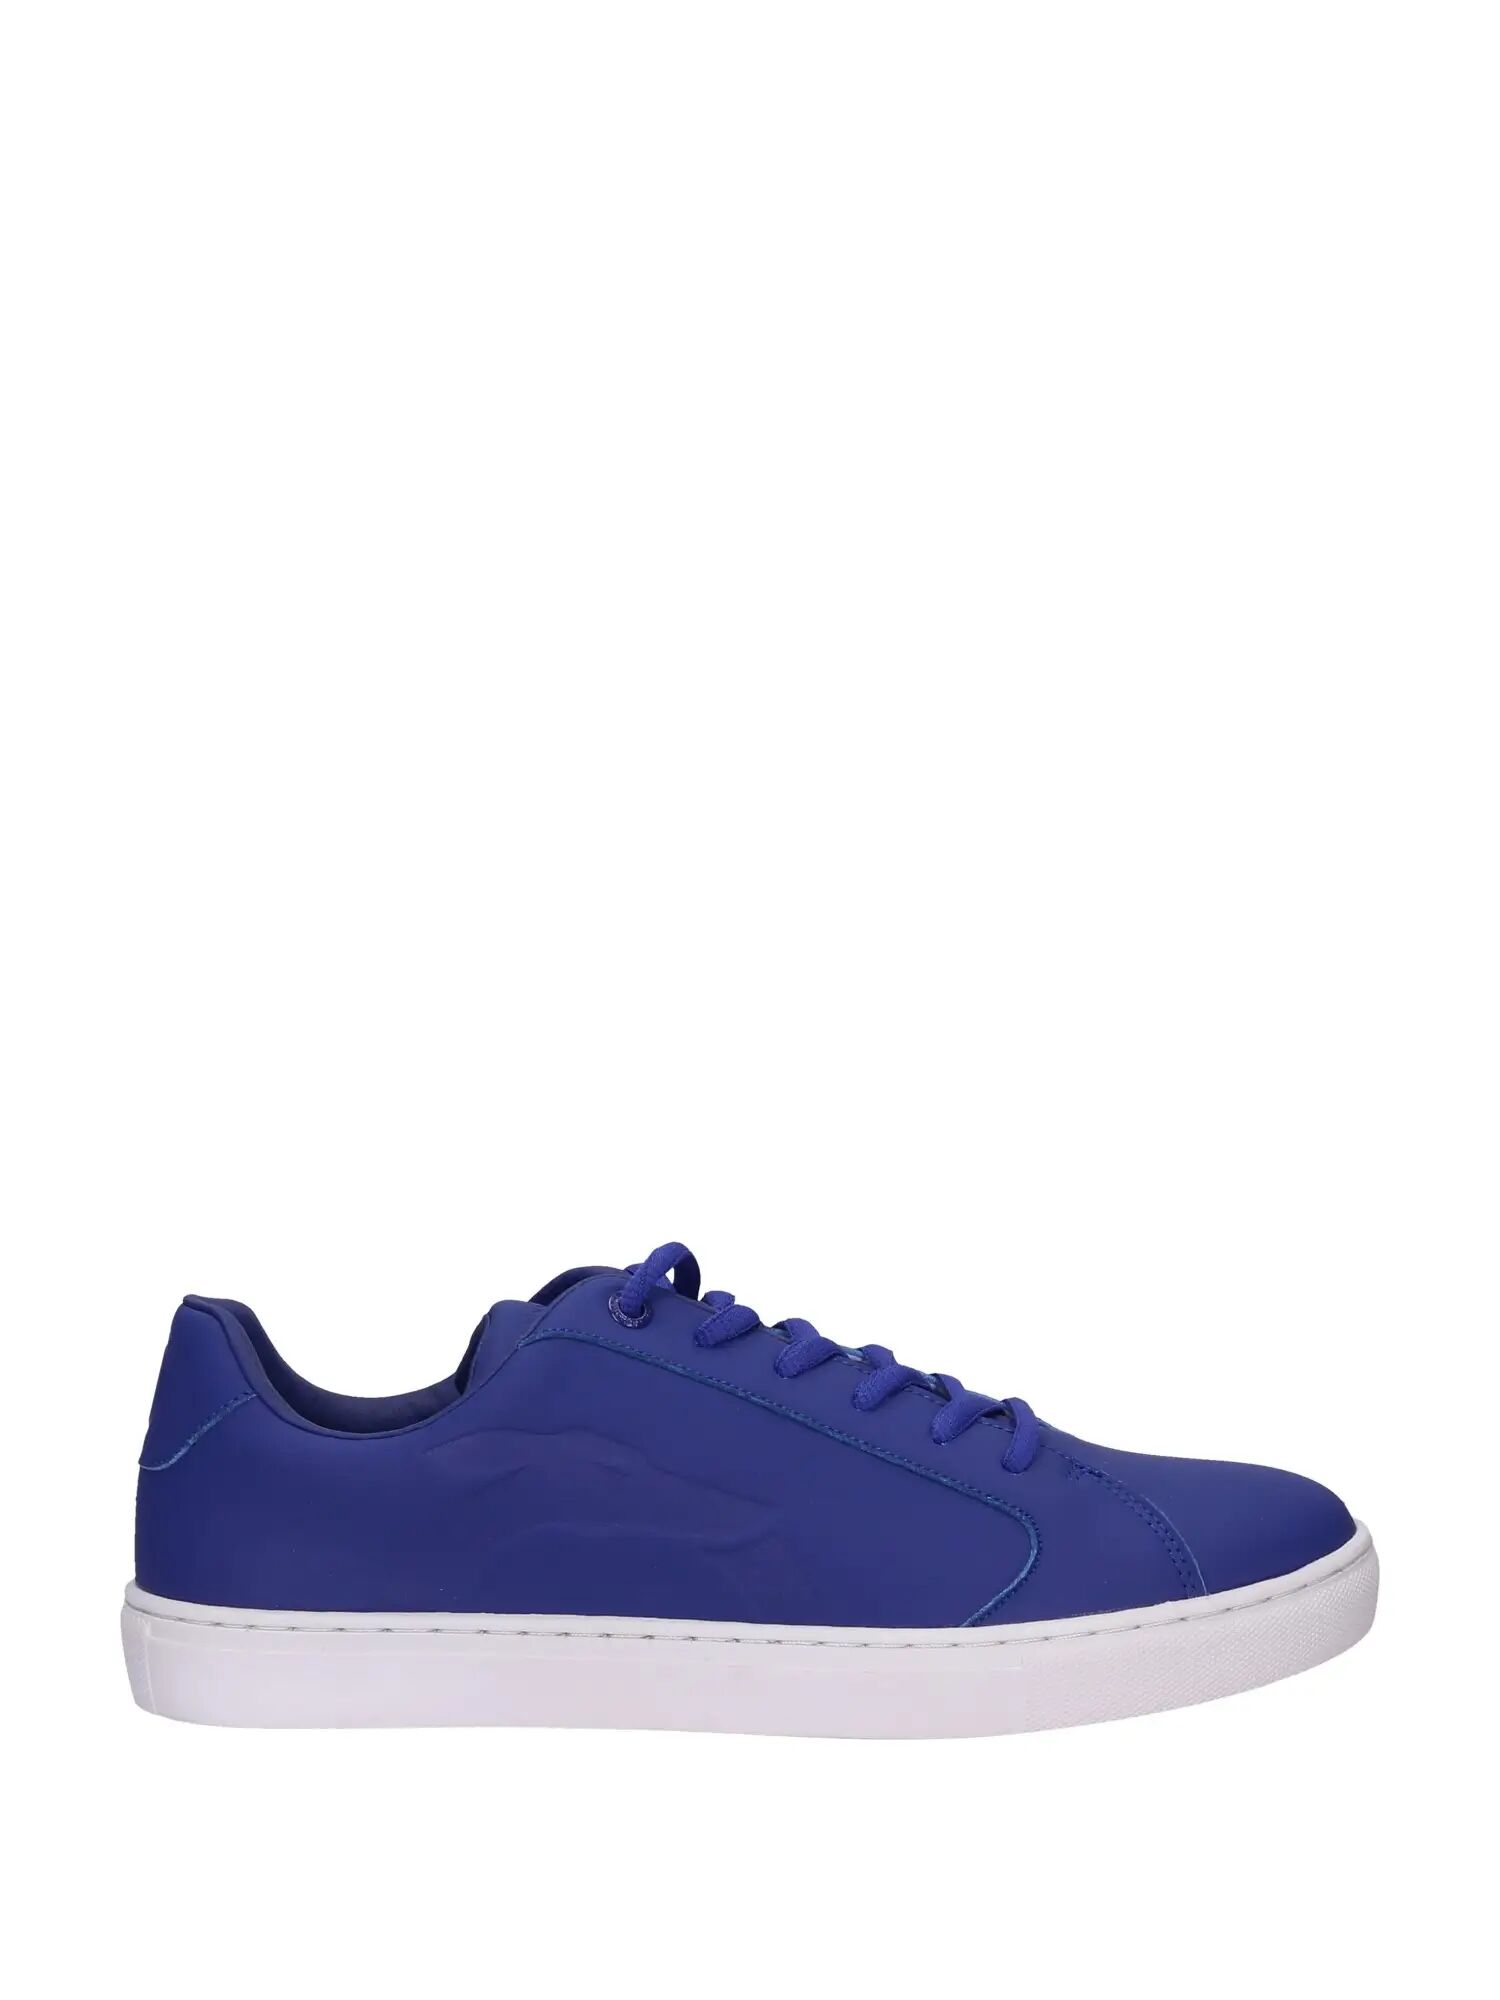 Trussardi Sneakers Uomo Colore Blu BLU 40